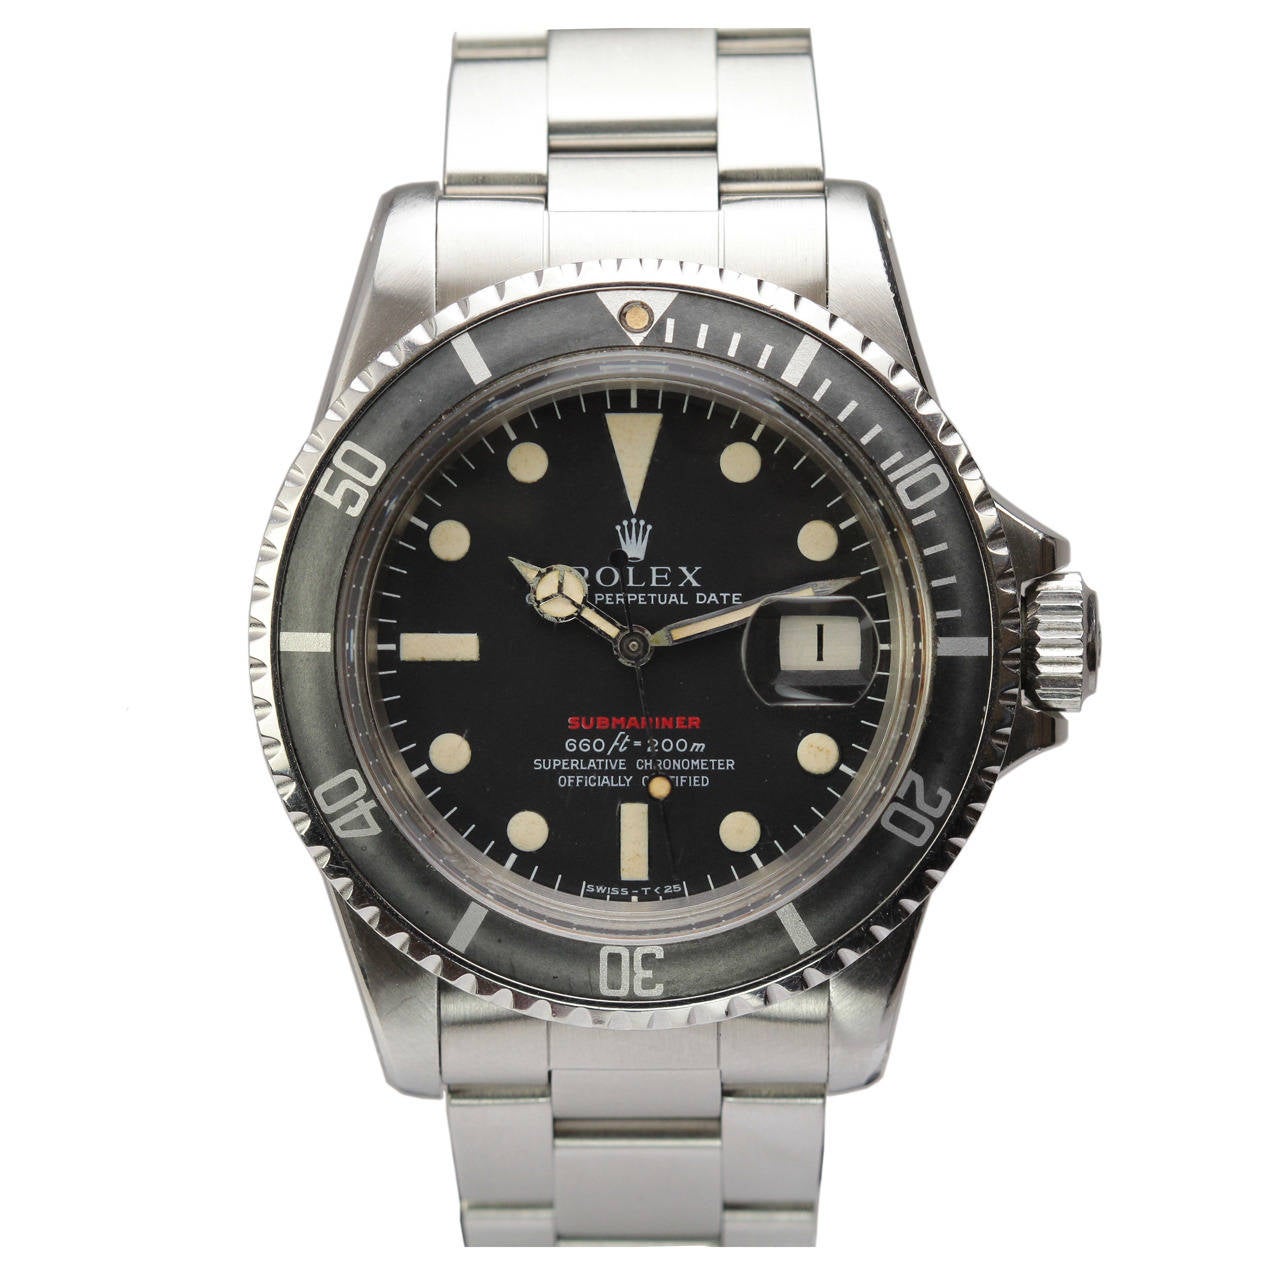 Rolex Stainless Steel Red Submariner Wristwatch Ref 1680 c. 1971